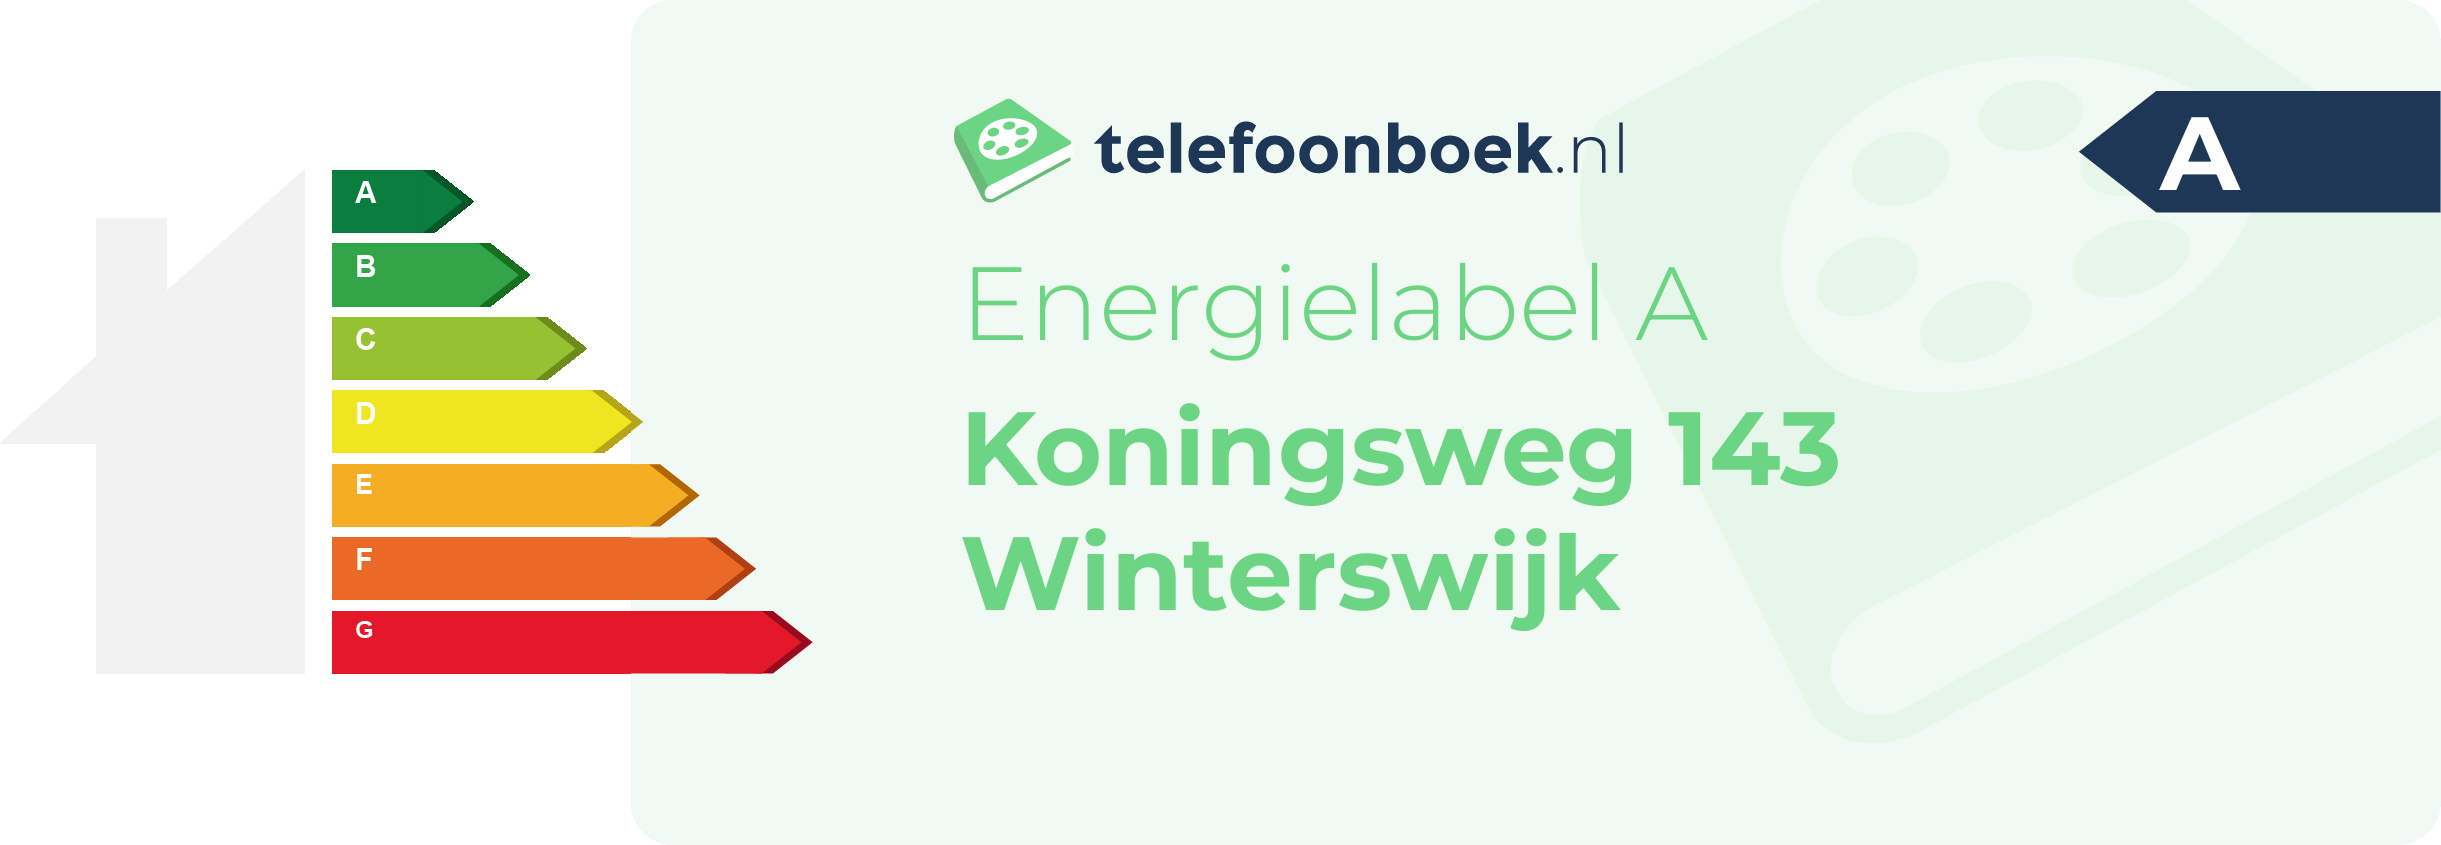 Energielabel Koningsweg 143 Winterswijk